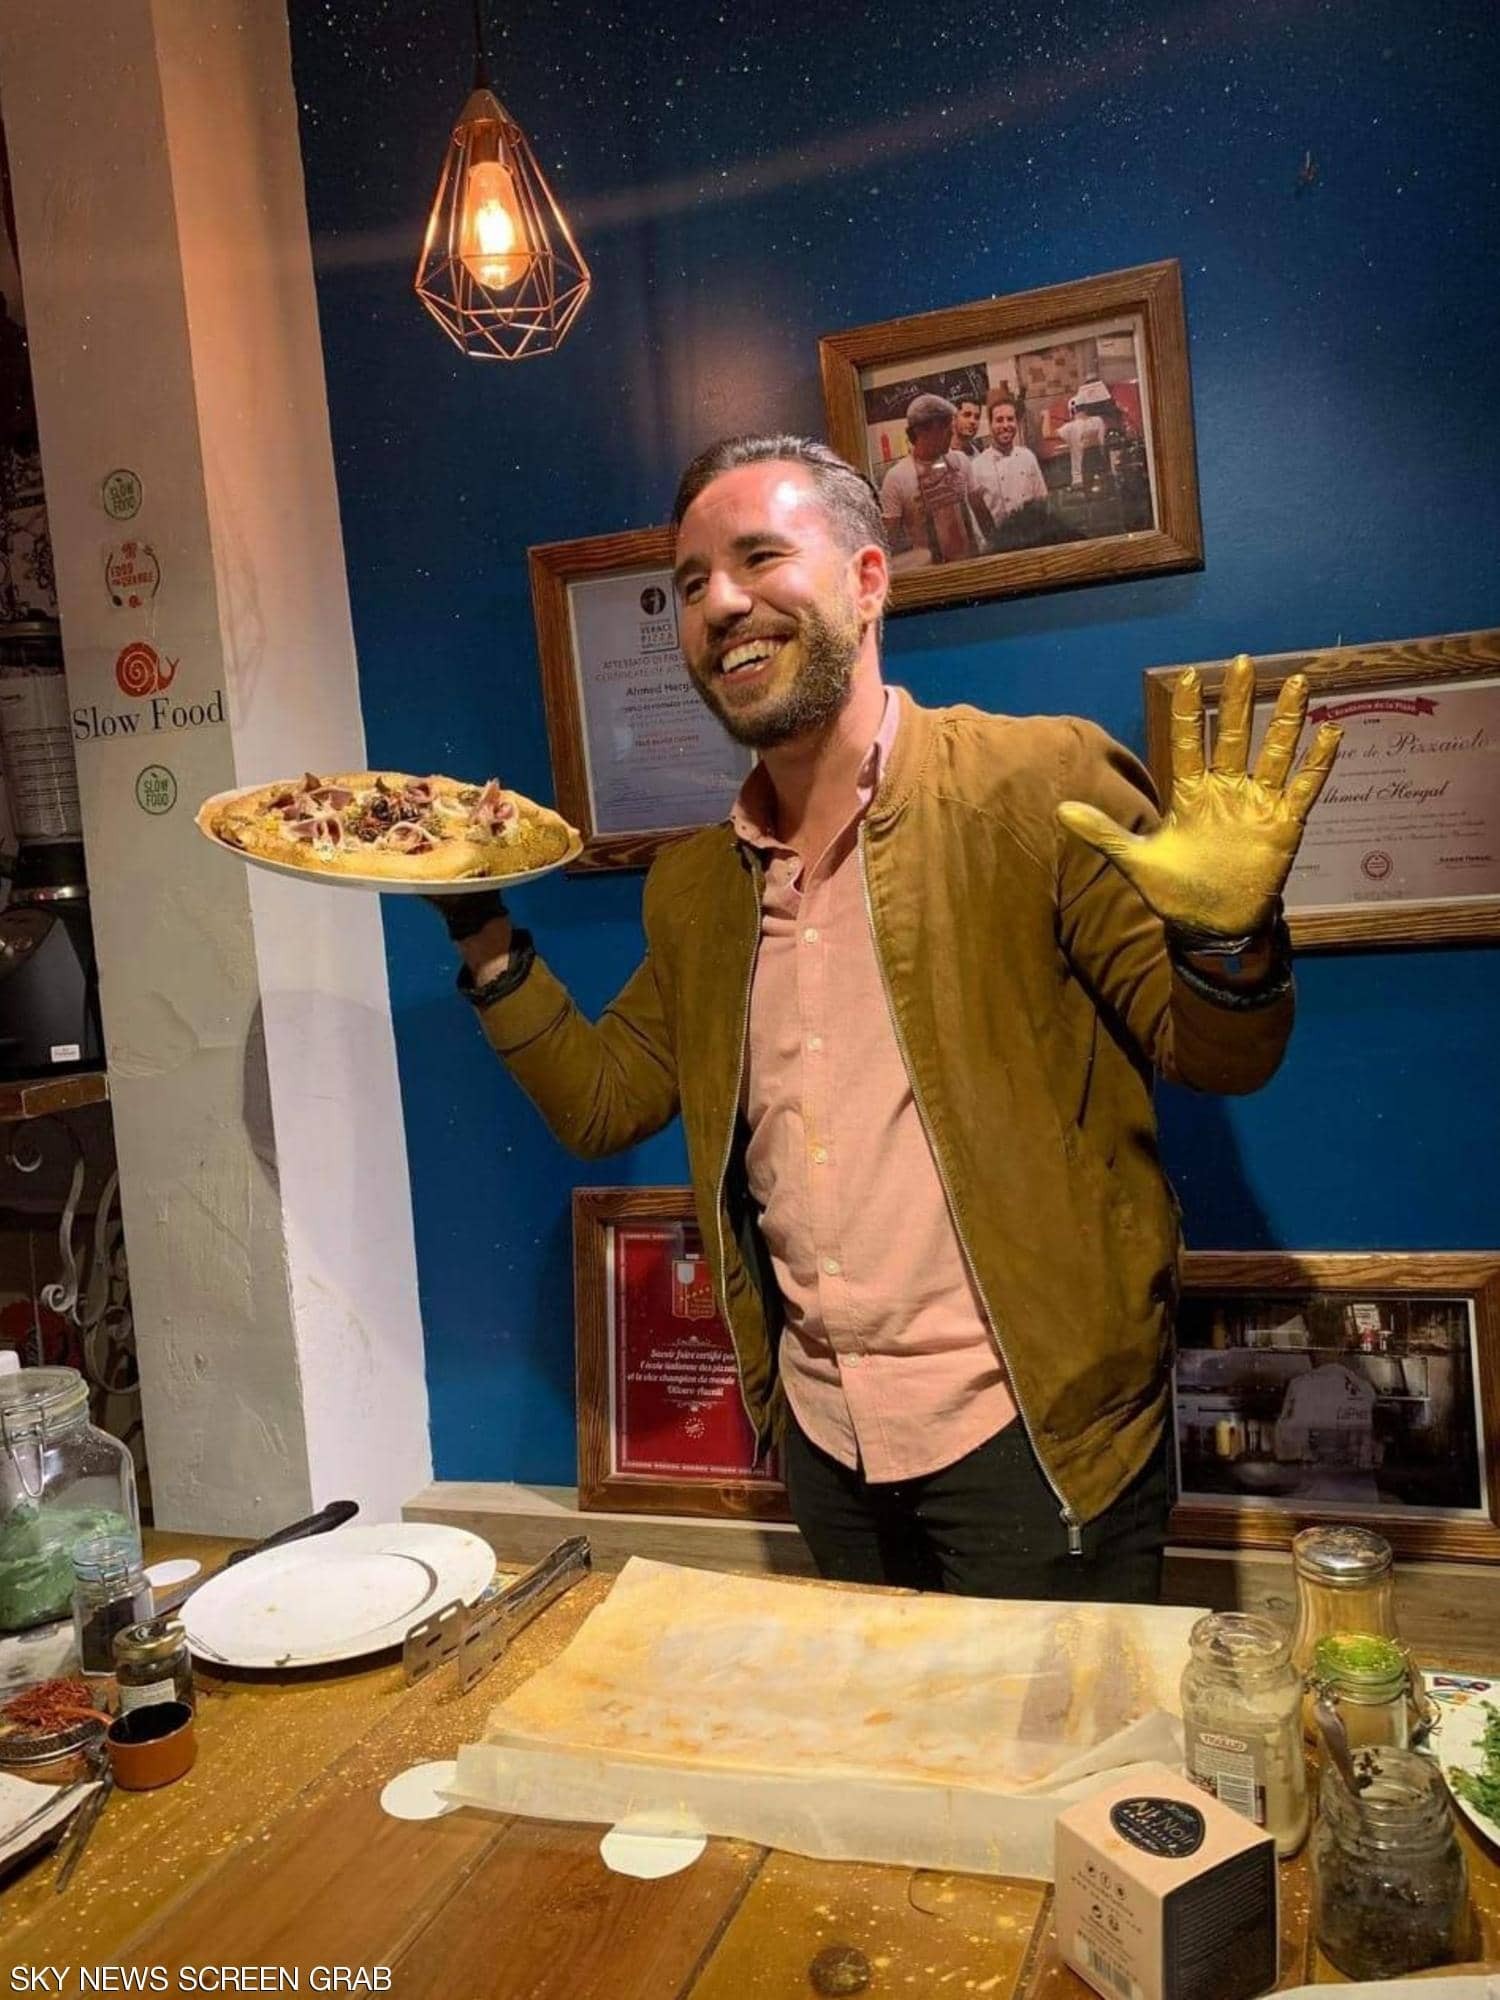 شاهدوا | بسعر "باهظ" طباخ تونسي يقدم "بيتزا الذهب" لزبائنه